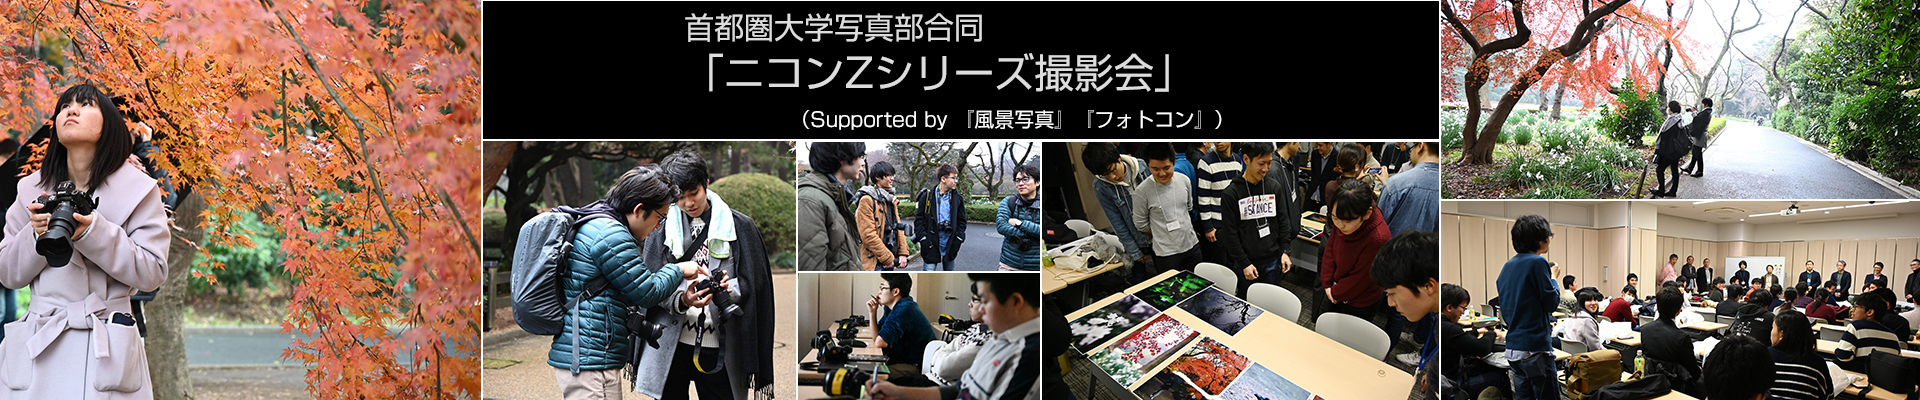 首都圏大学写真部合同「ニコンZシリーズ撮影会」（Supported by 『風景写真』『フォトコン』）